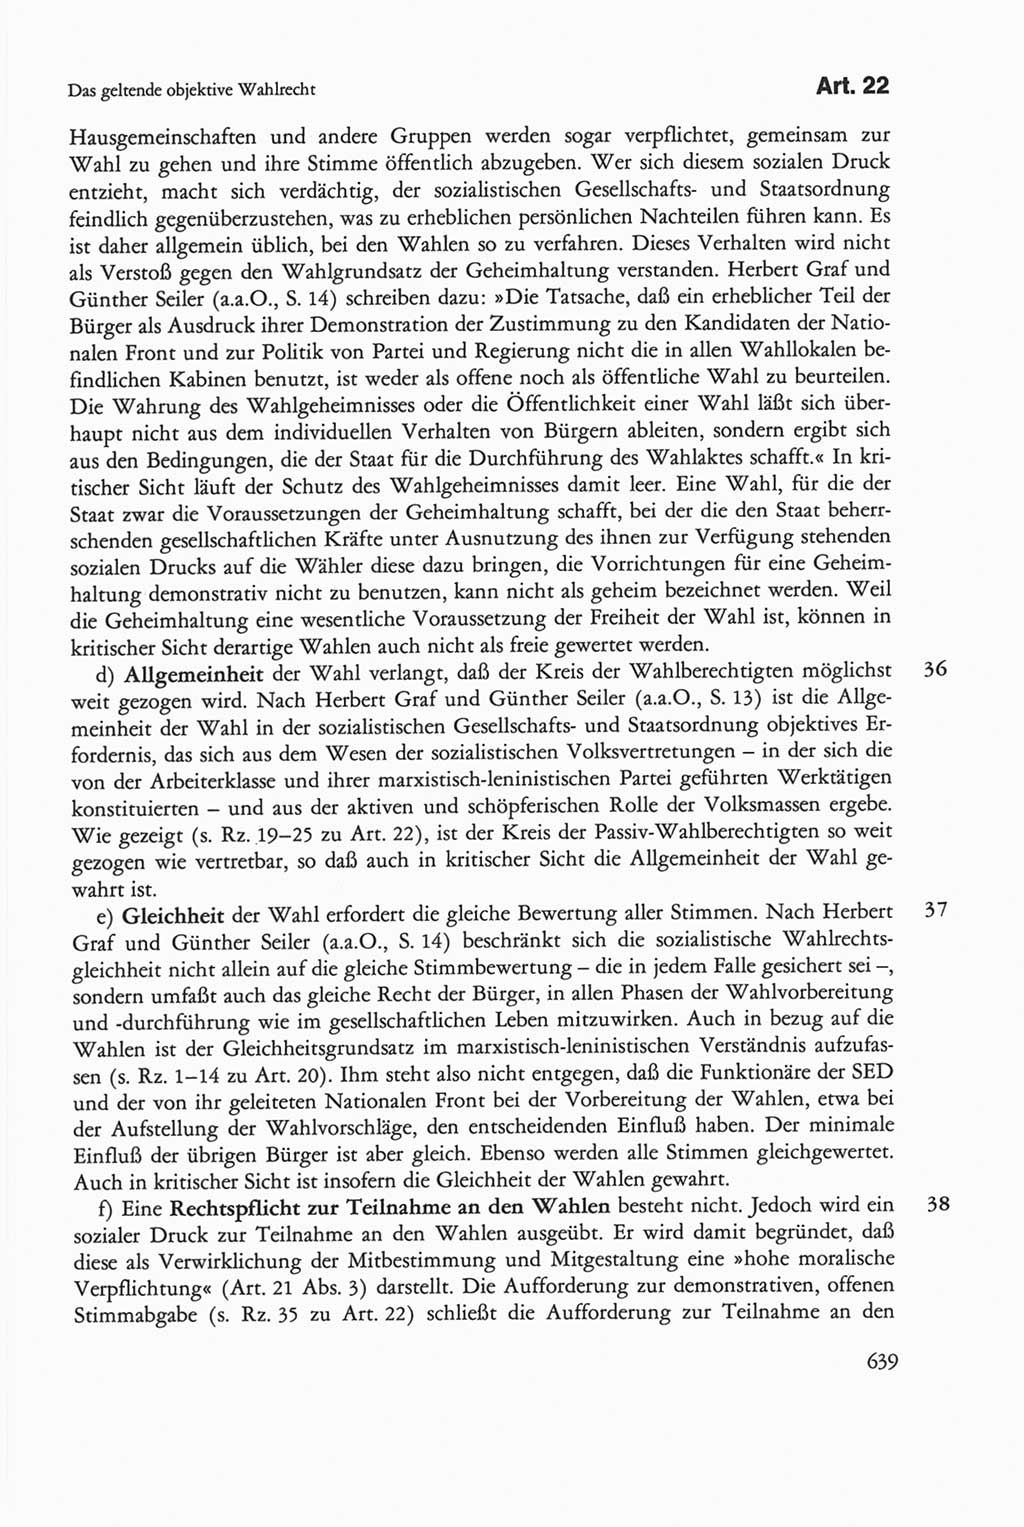 Die sozialistische Verfassung der Deutschen Demokratischen Republik (DDR), Kommentar 1982, Seite 639 (Soz. Verf. DDR Komm. 1982, S. 639)